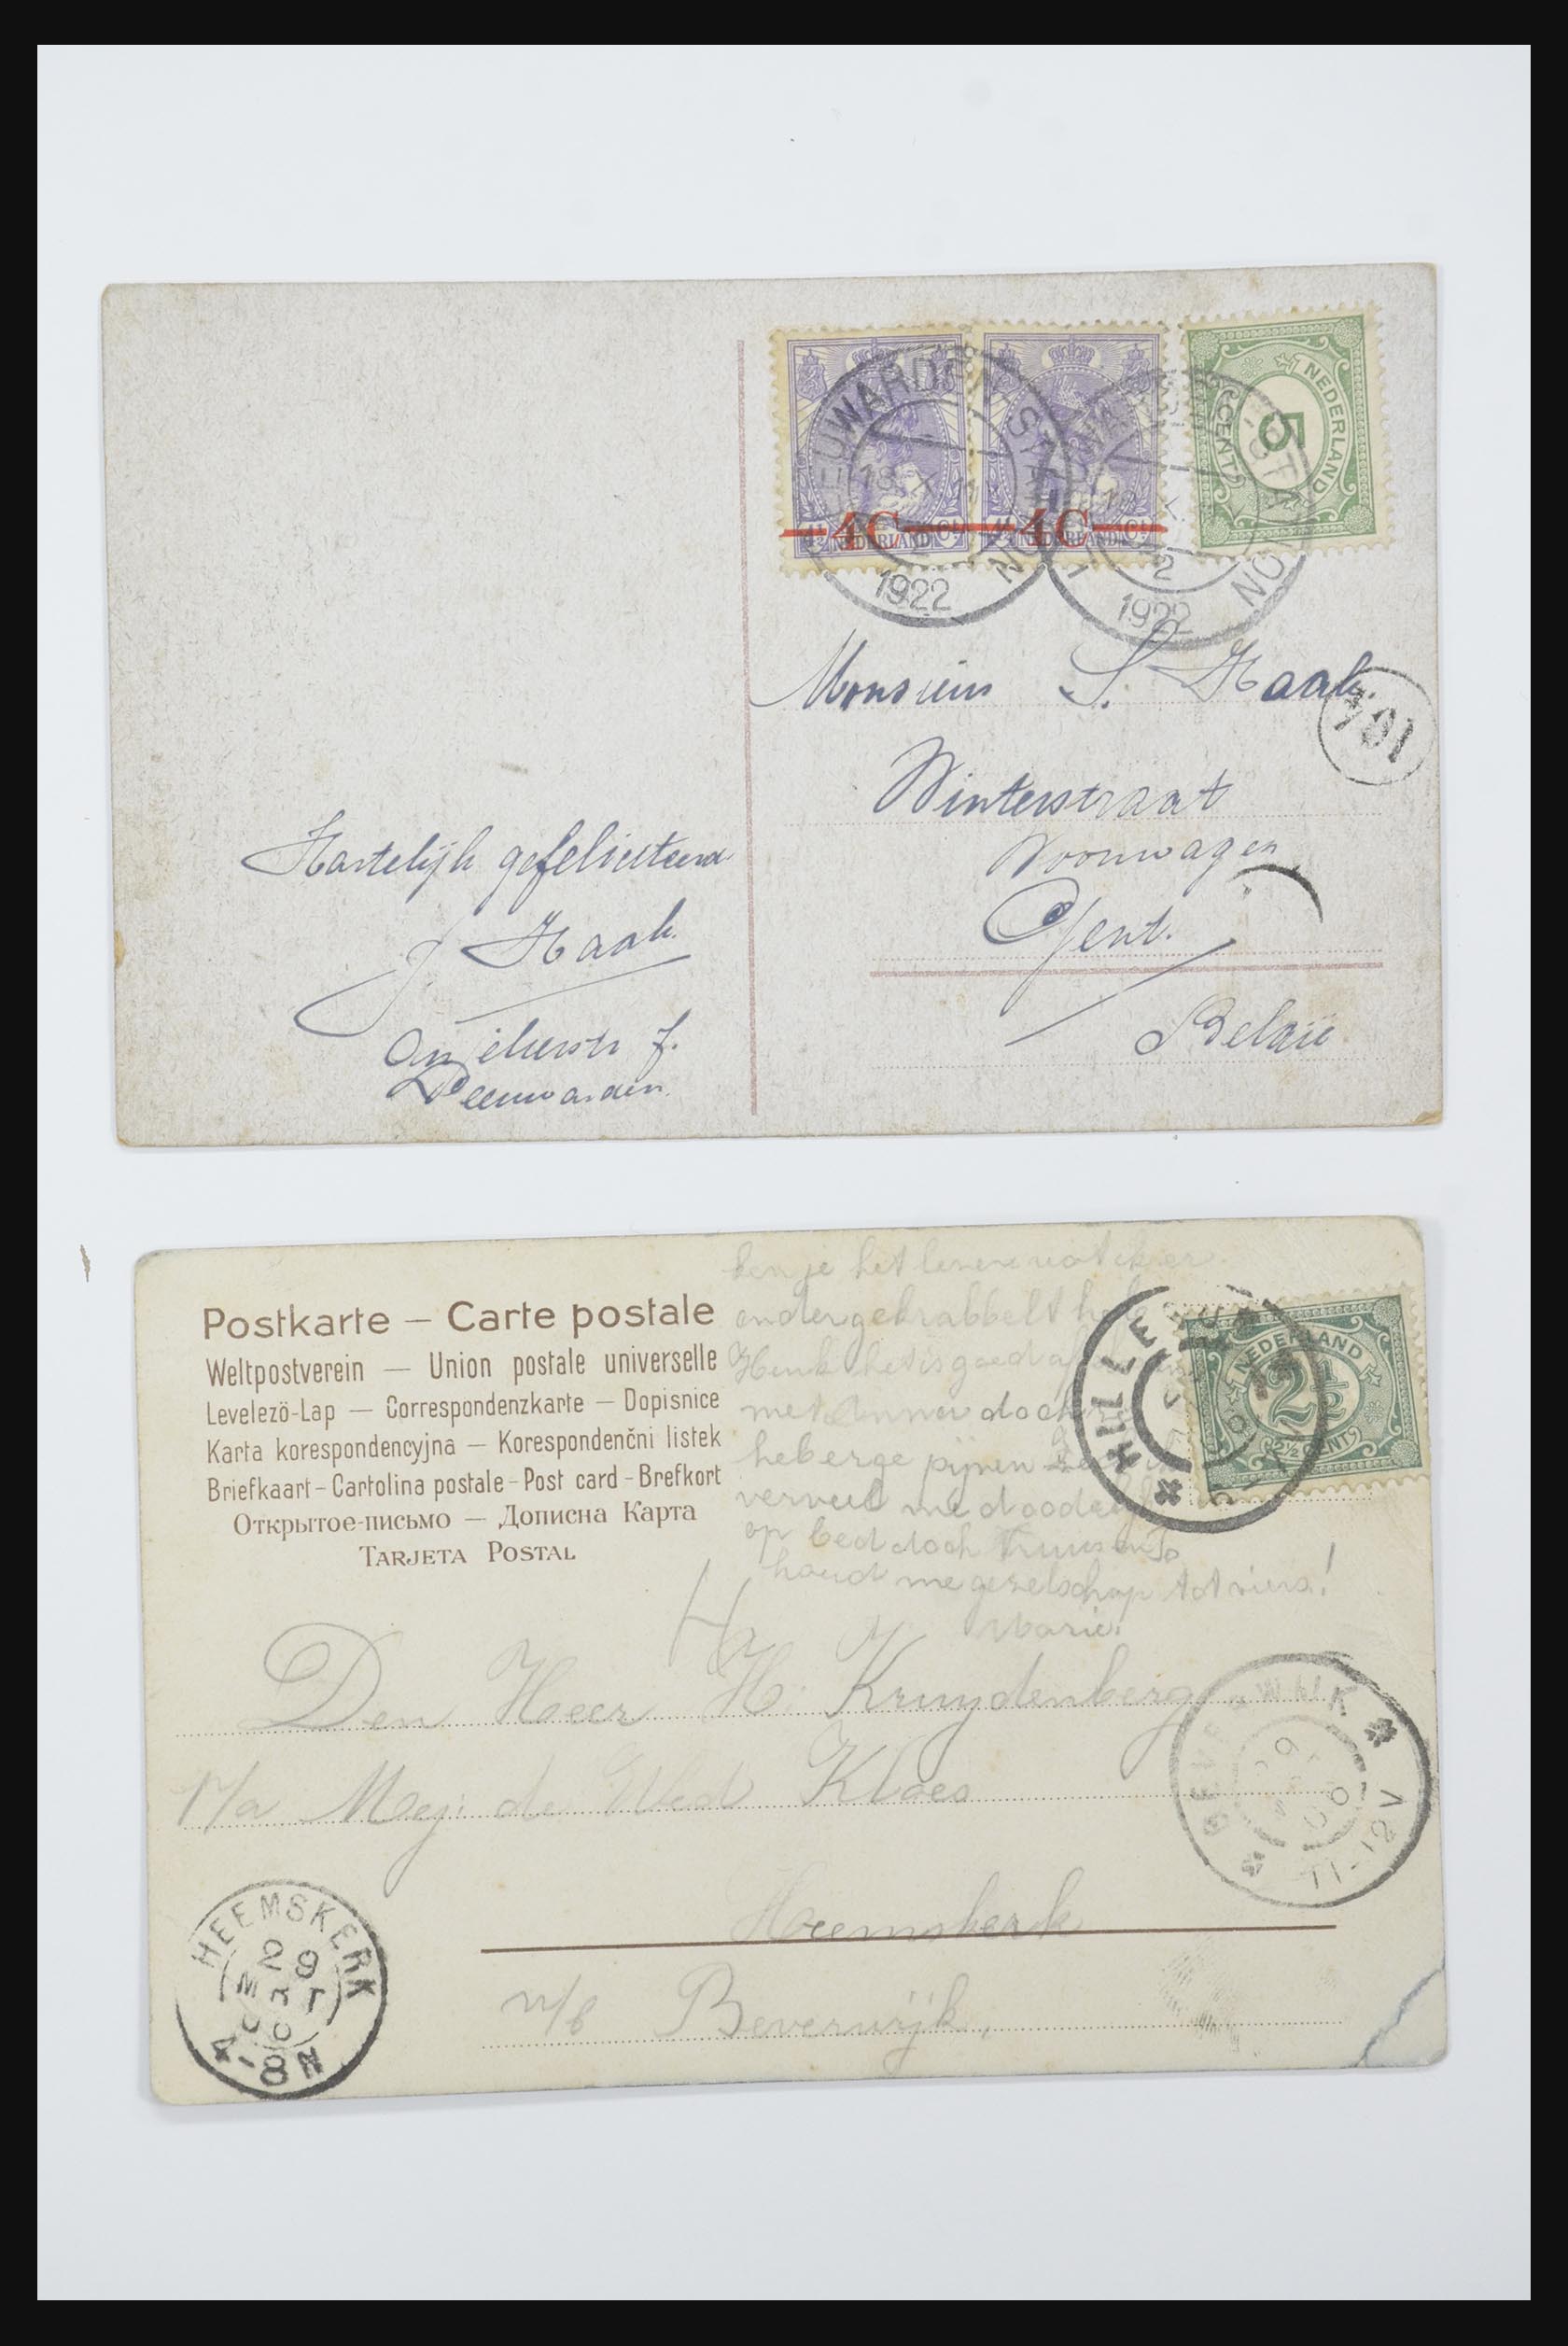 31668 051 - 31668 Nederland ansichtkaarten 1905-1935.